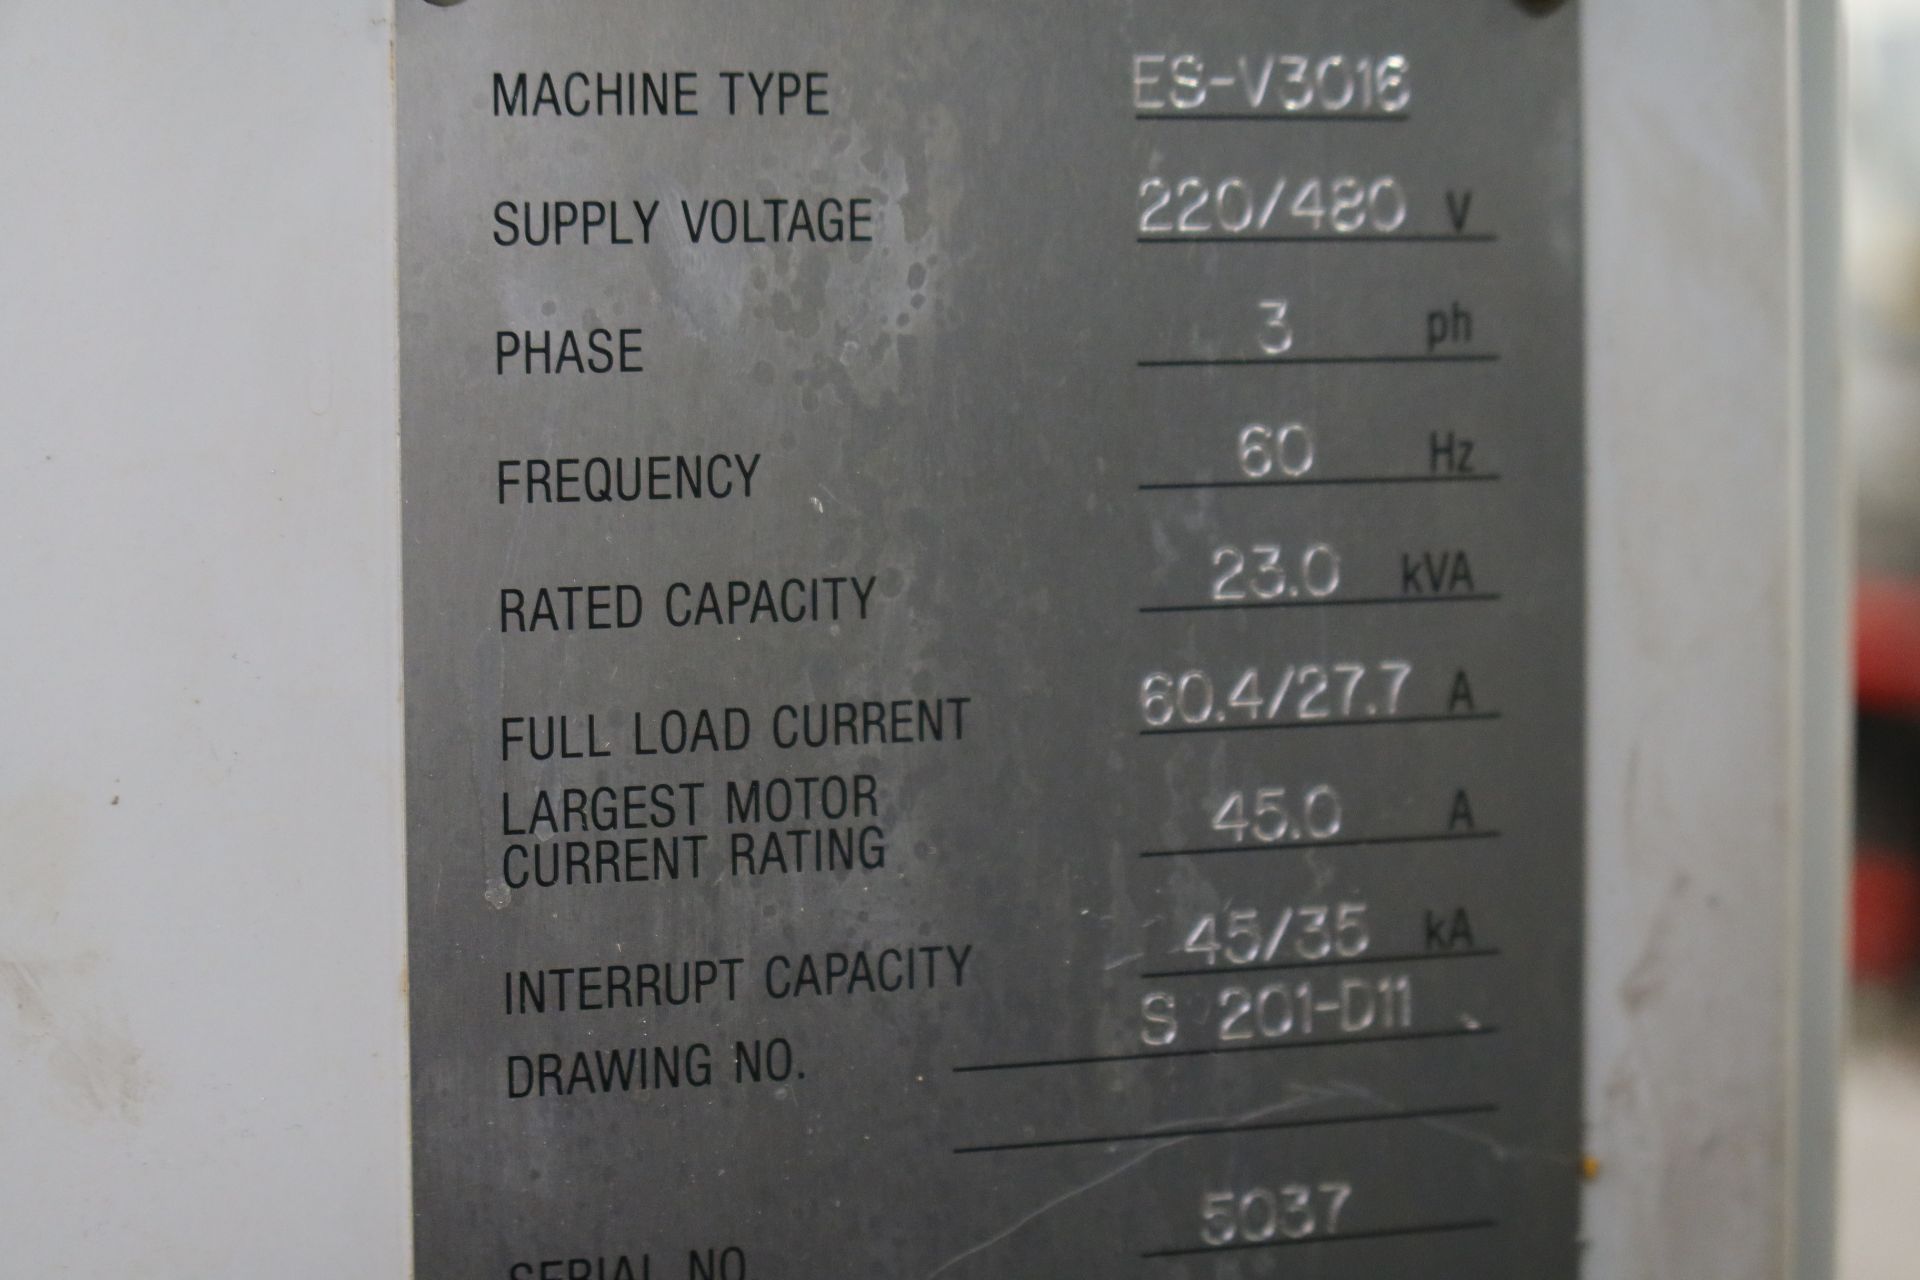 2005 OKUMA ES-V3016 5-AXIS CNC VERTICAL MACHINIG CENTER SN 5037 - Image 10 of 12